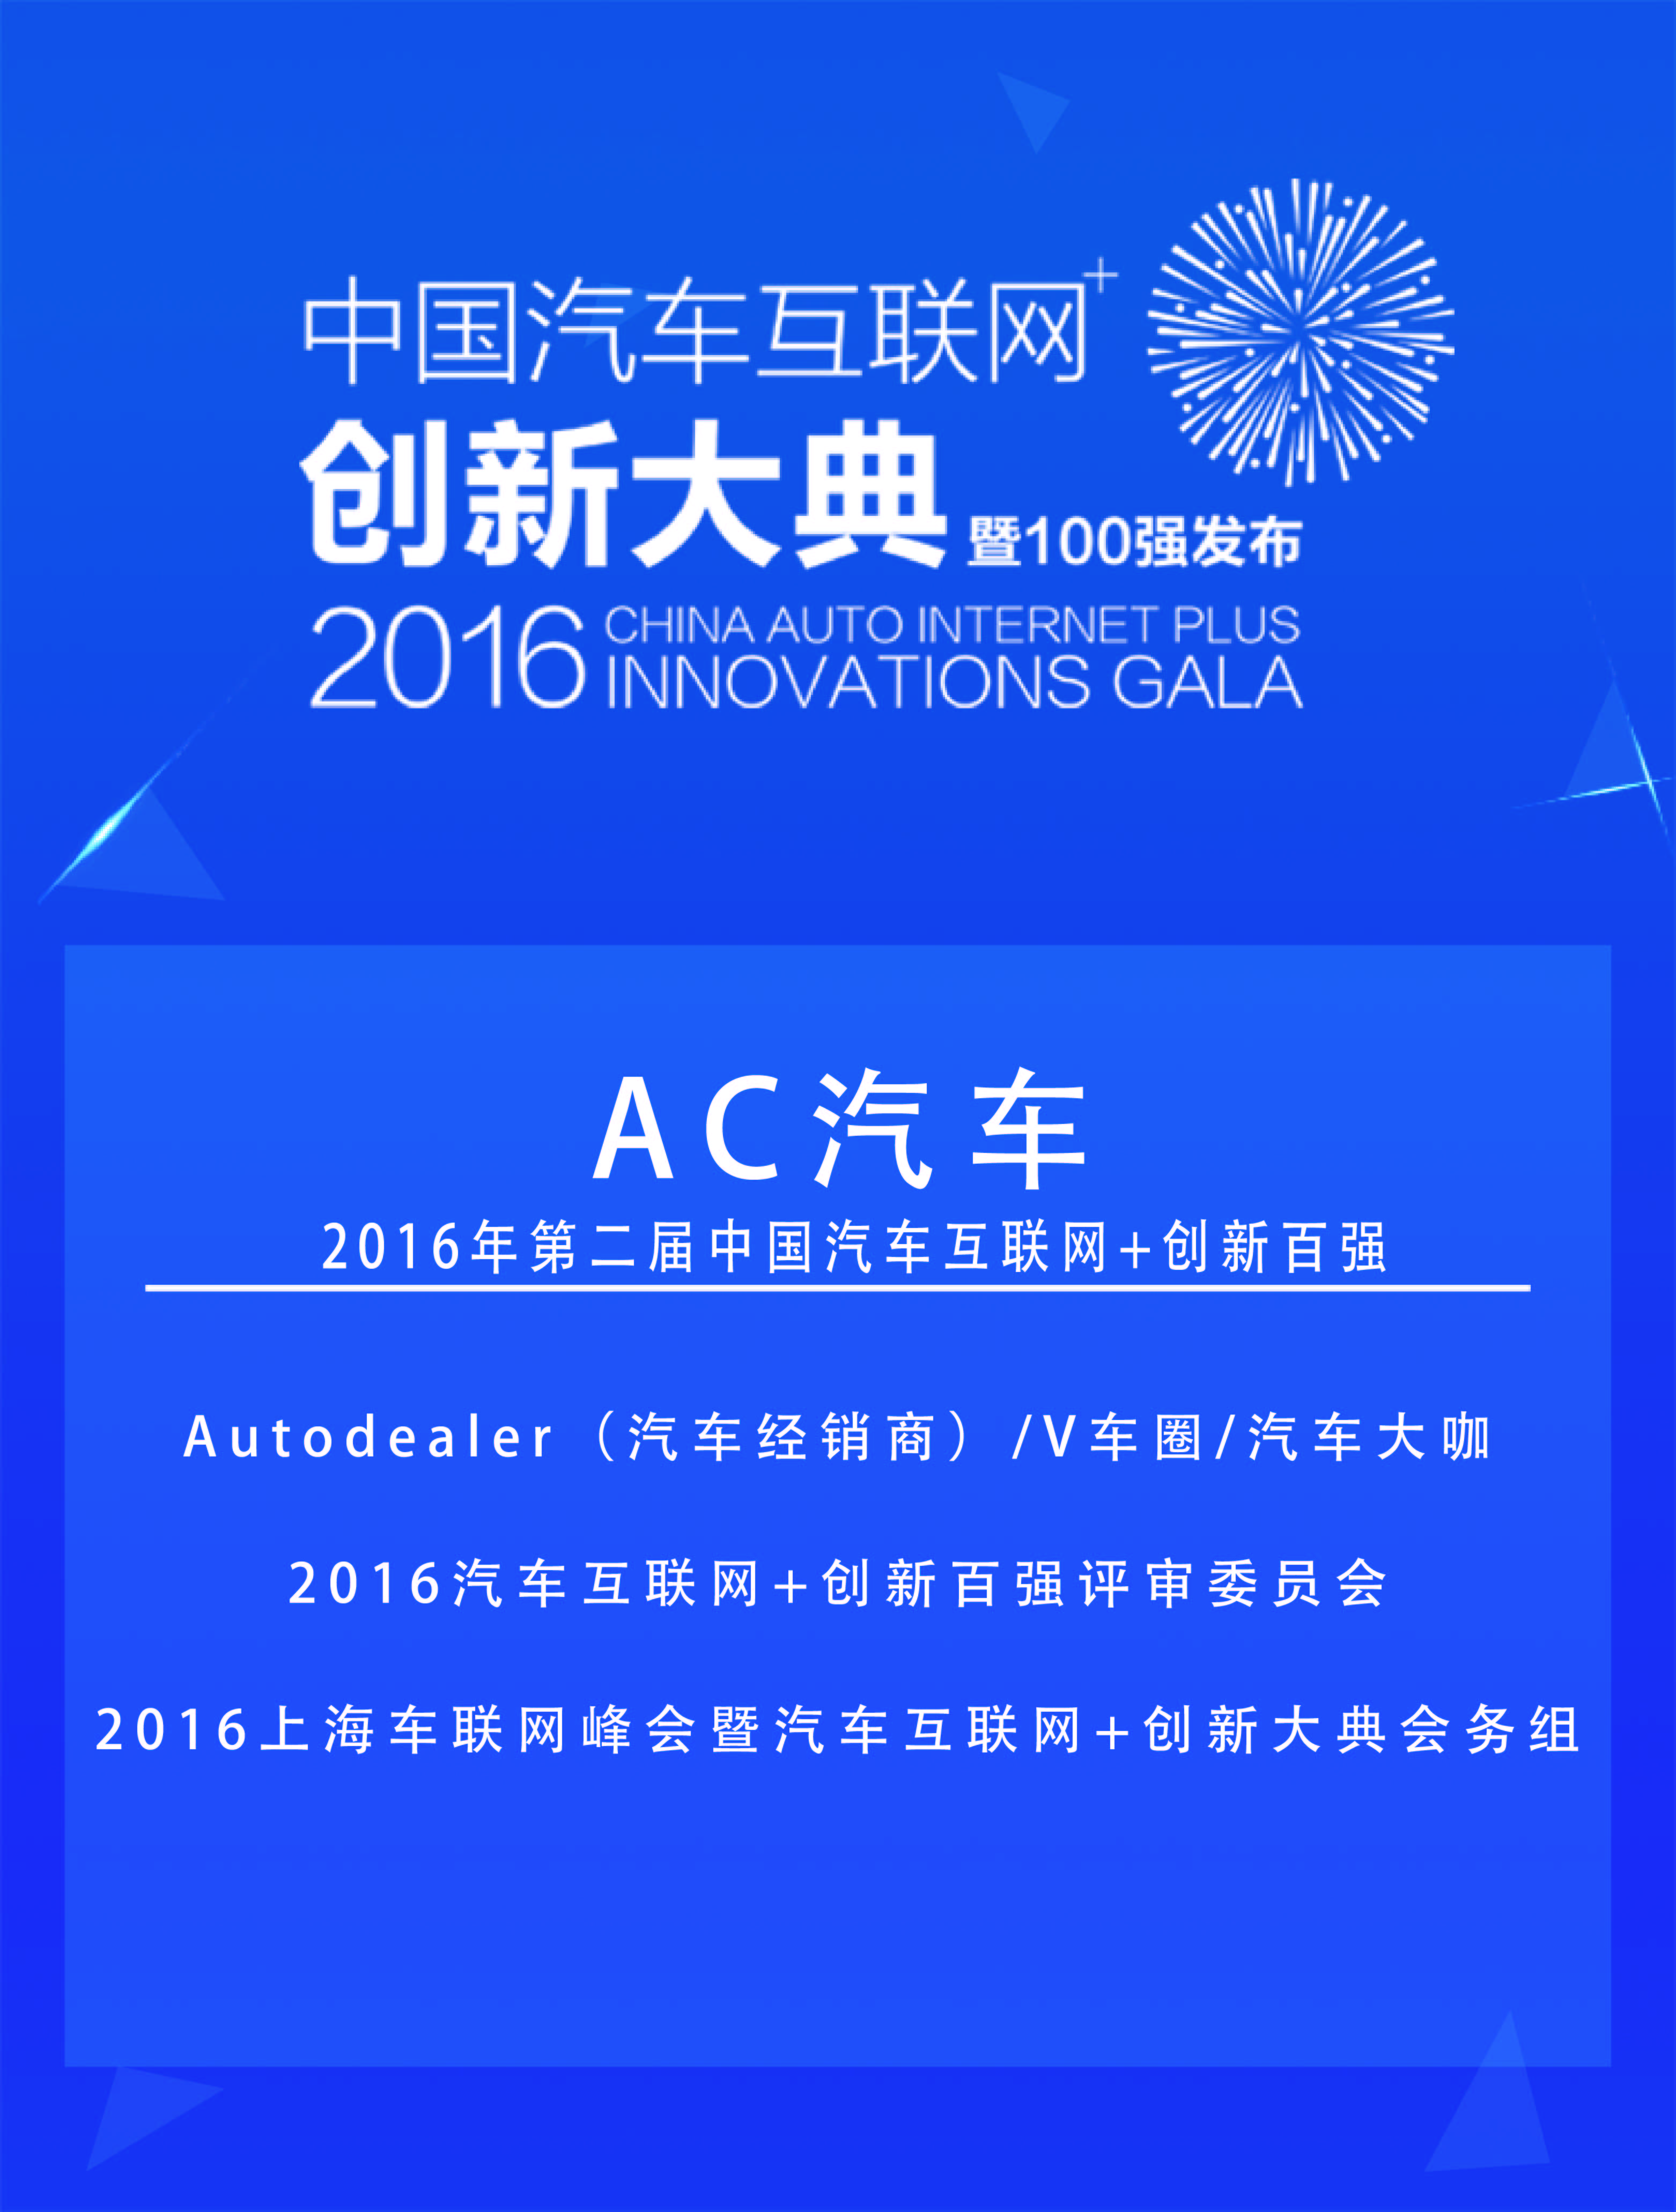 AC汽车获“2016中国汽车互联网+创新”100强企业称号